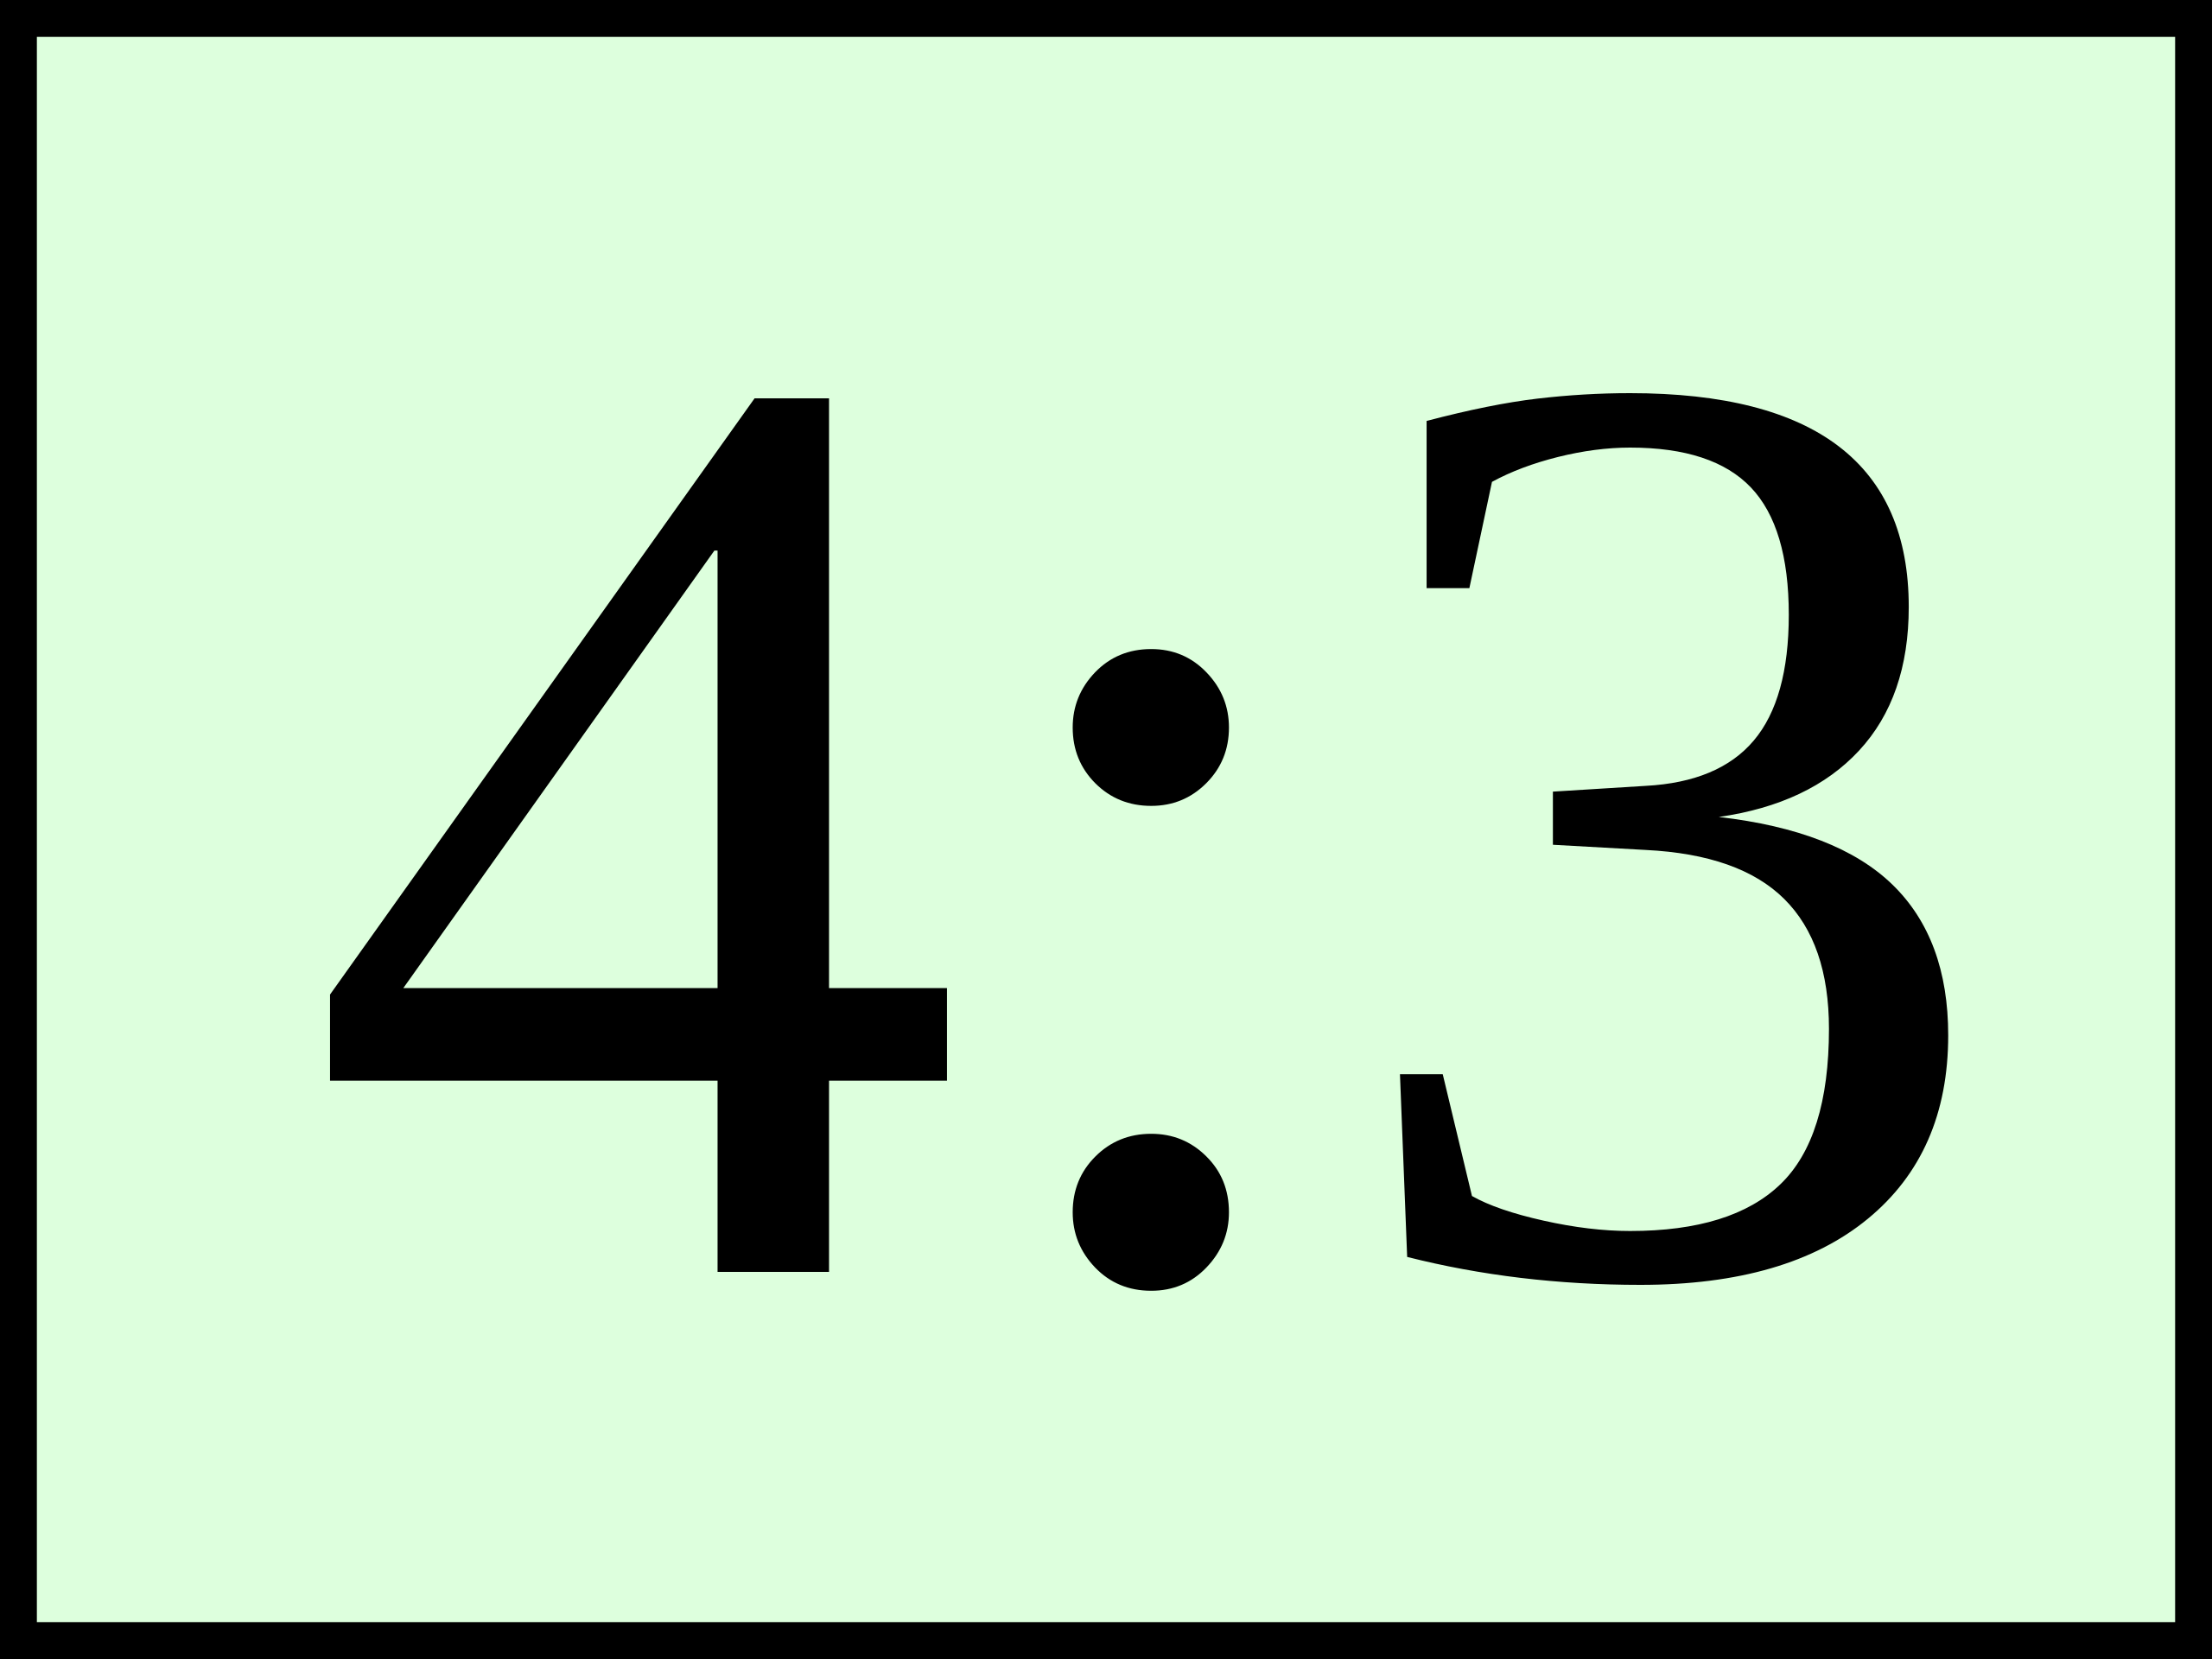 File:Aspect ratio - 4x3.svg - Wikipedia